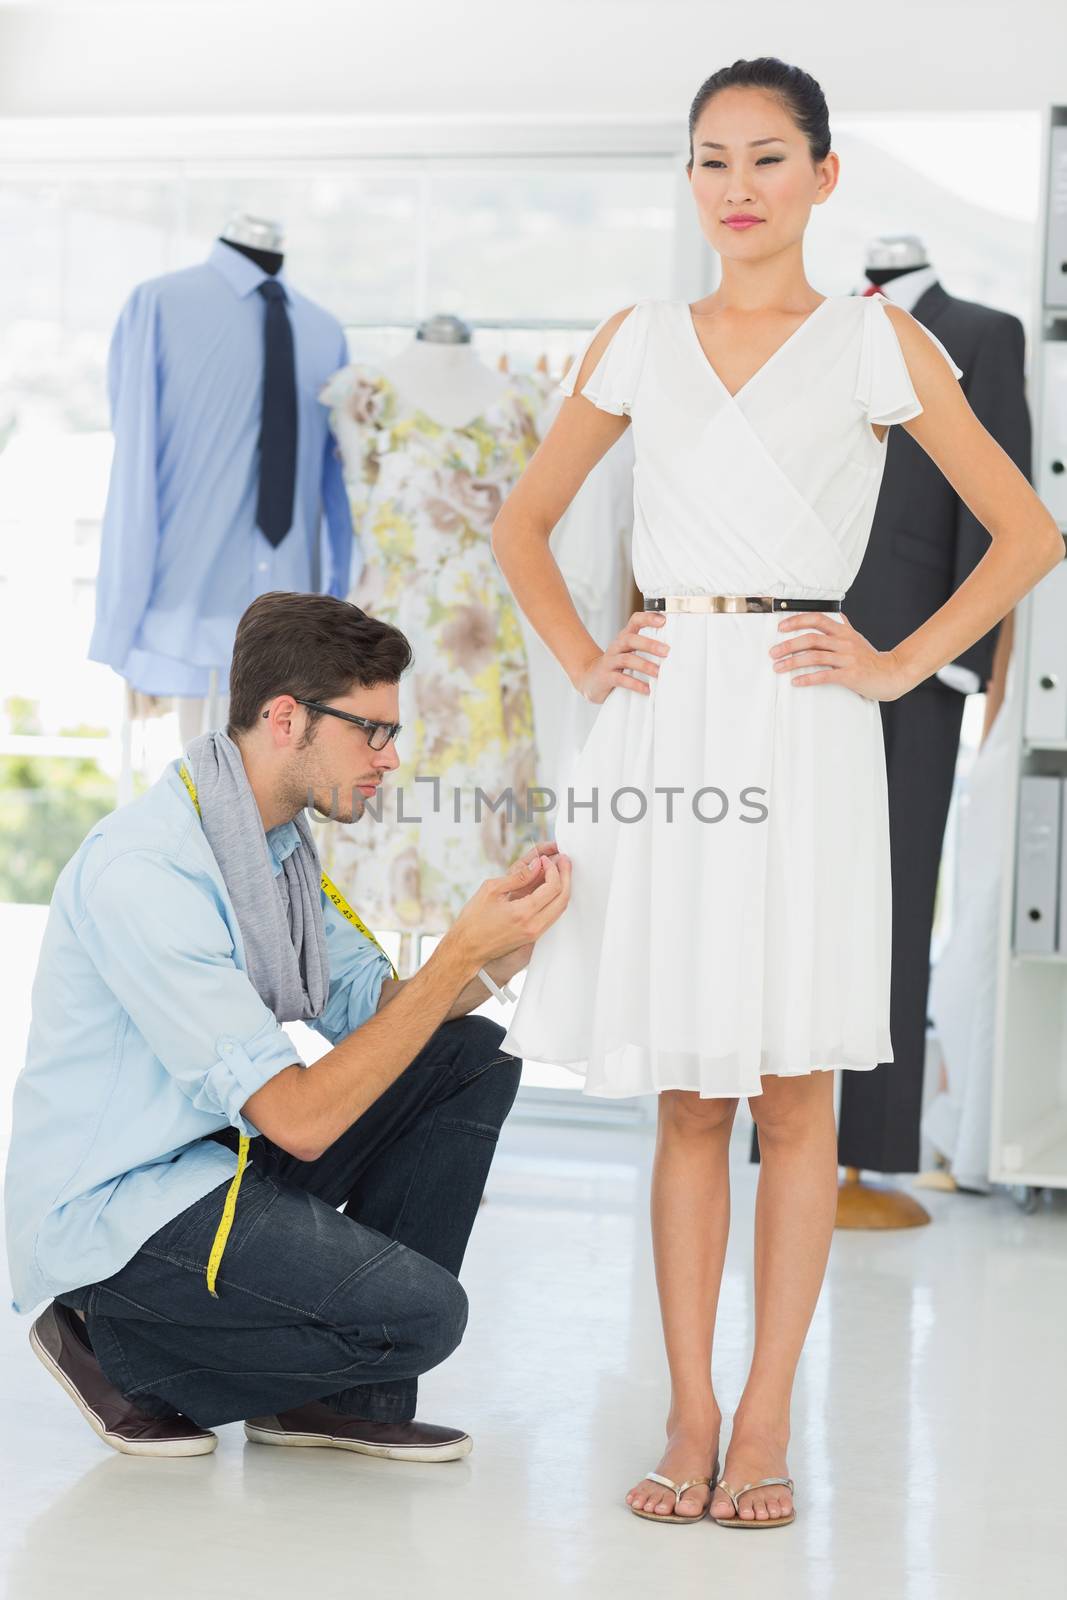 Male fashion designer adjusting dress on model in the studio